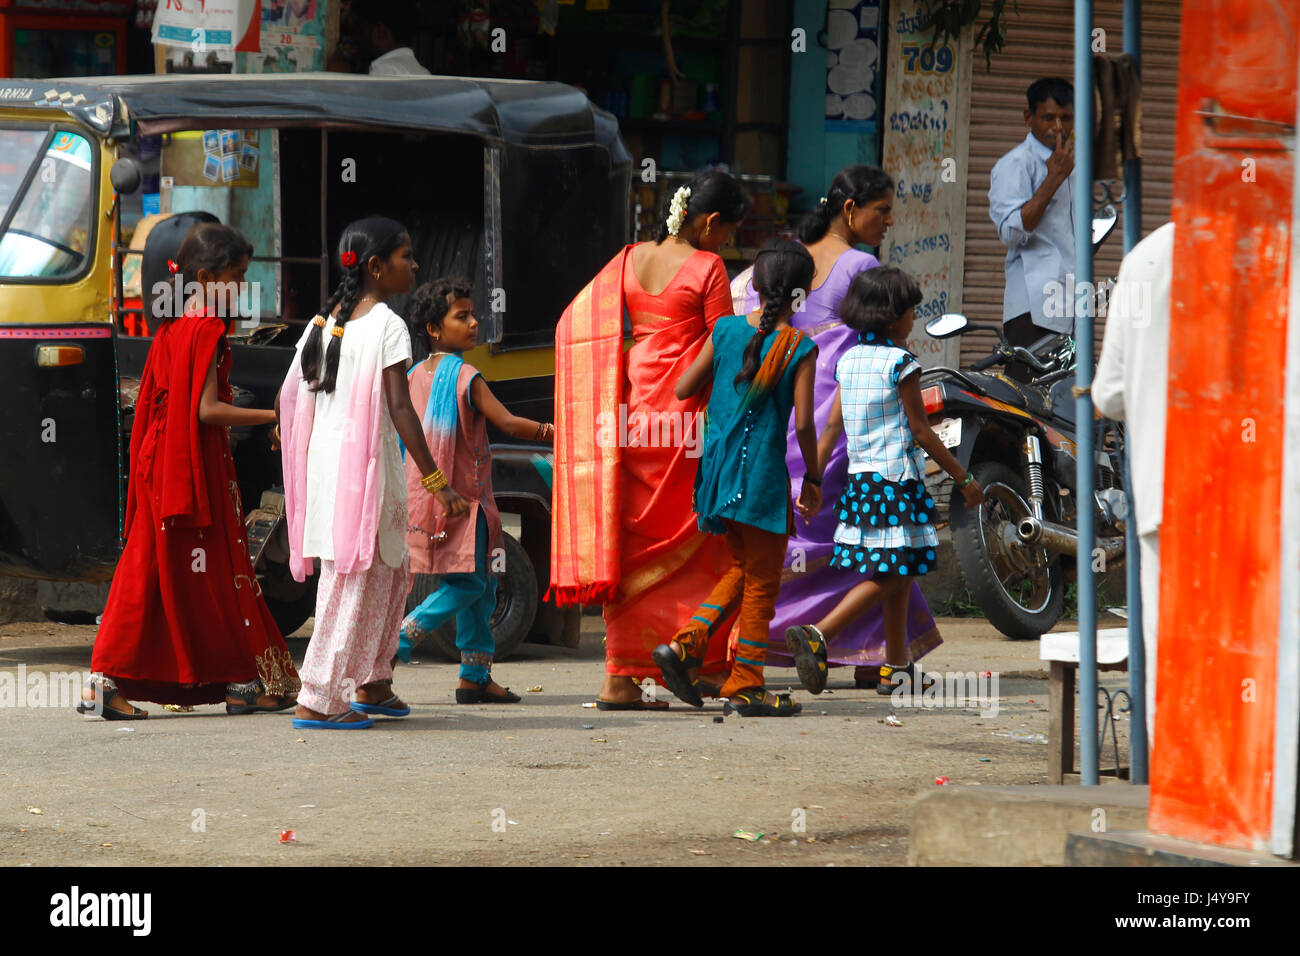 Famiglia indiana nei tradizionali abiti colorati camminare per le strade, Karnataka, India Foto Stock